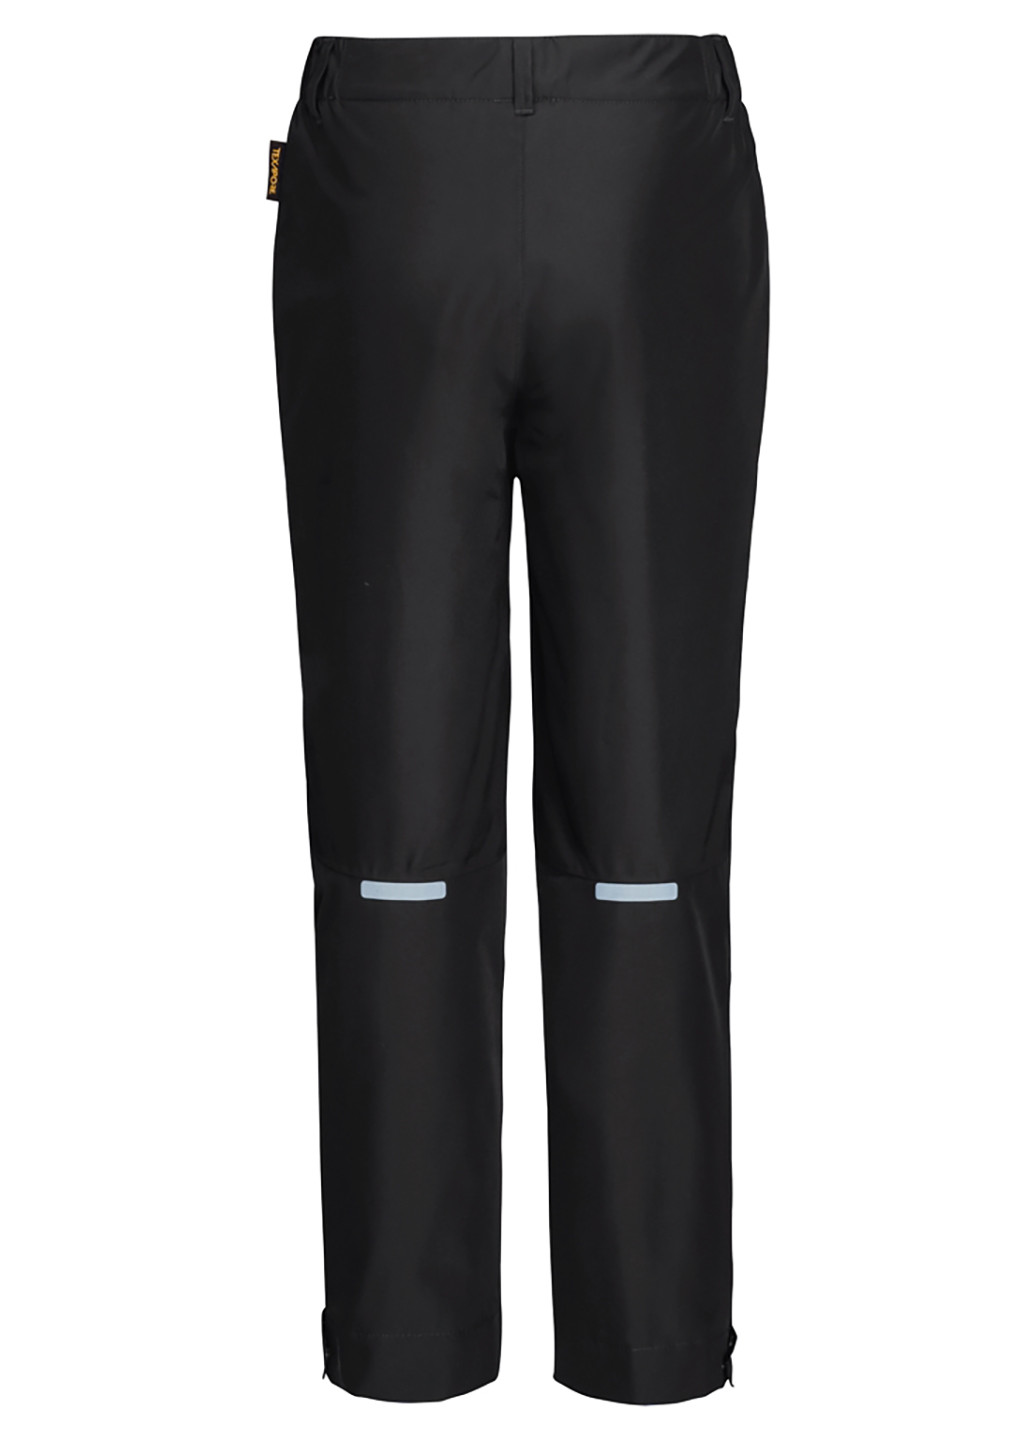 Черные спортивные зимние прямые брюки Jack Wolfskin